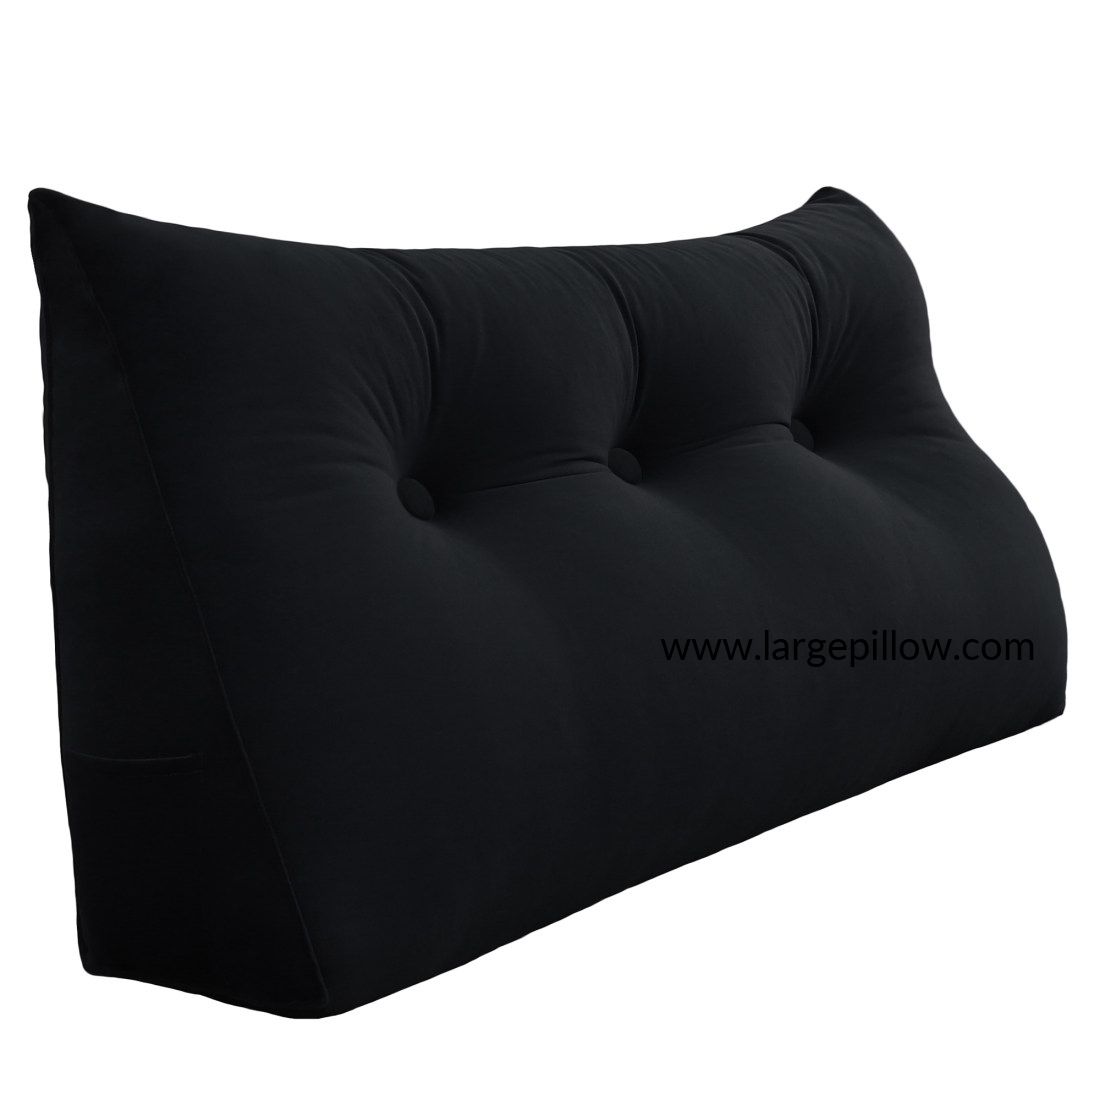 Ortho Wedge Cushion, Black 